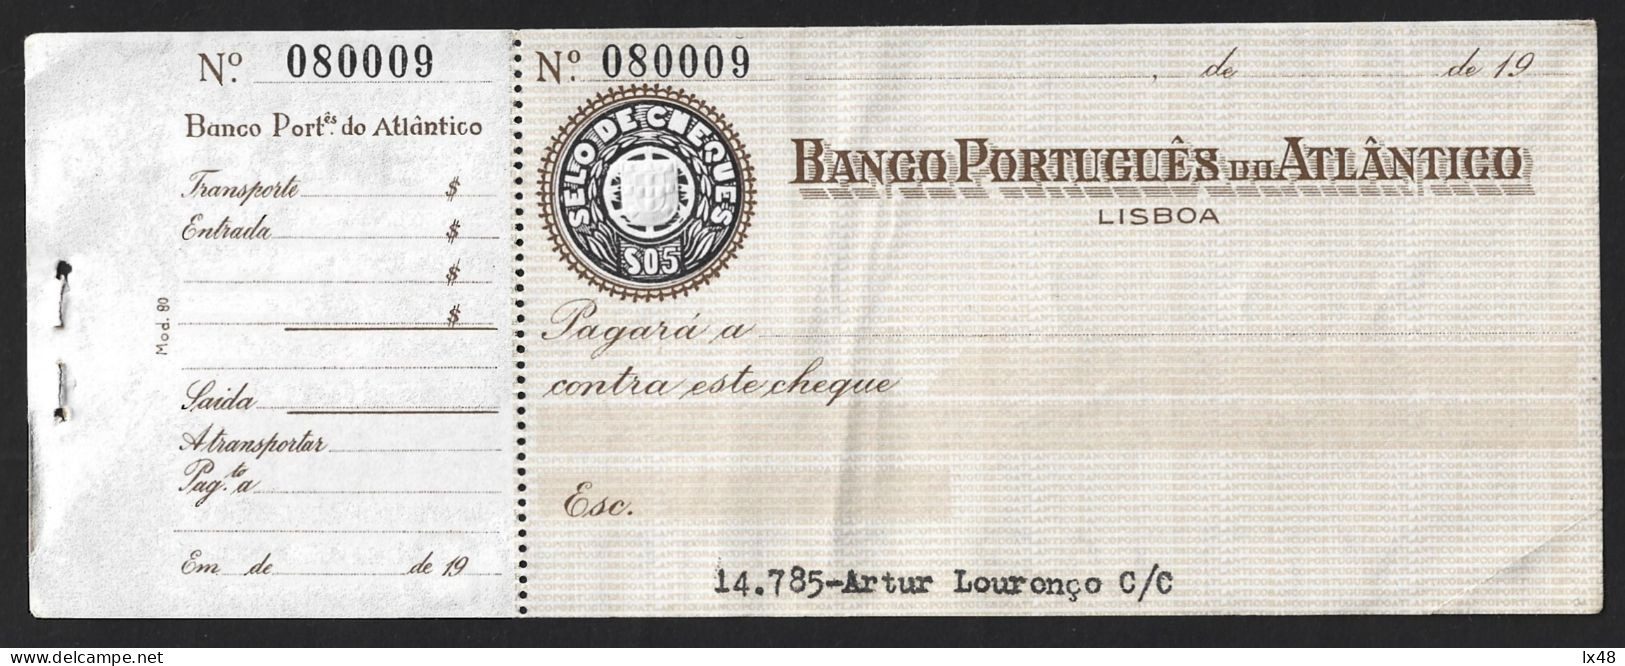 BPA Check. Banco Português Do Atlântico, Lisbon. $05 Check Stamp. BPA-controle. Banco Português Do Atlântico, Lissabon. - Cheques & Traveler's Cheques